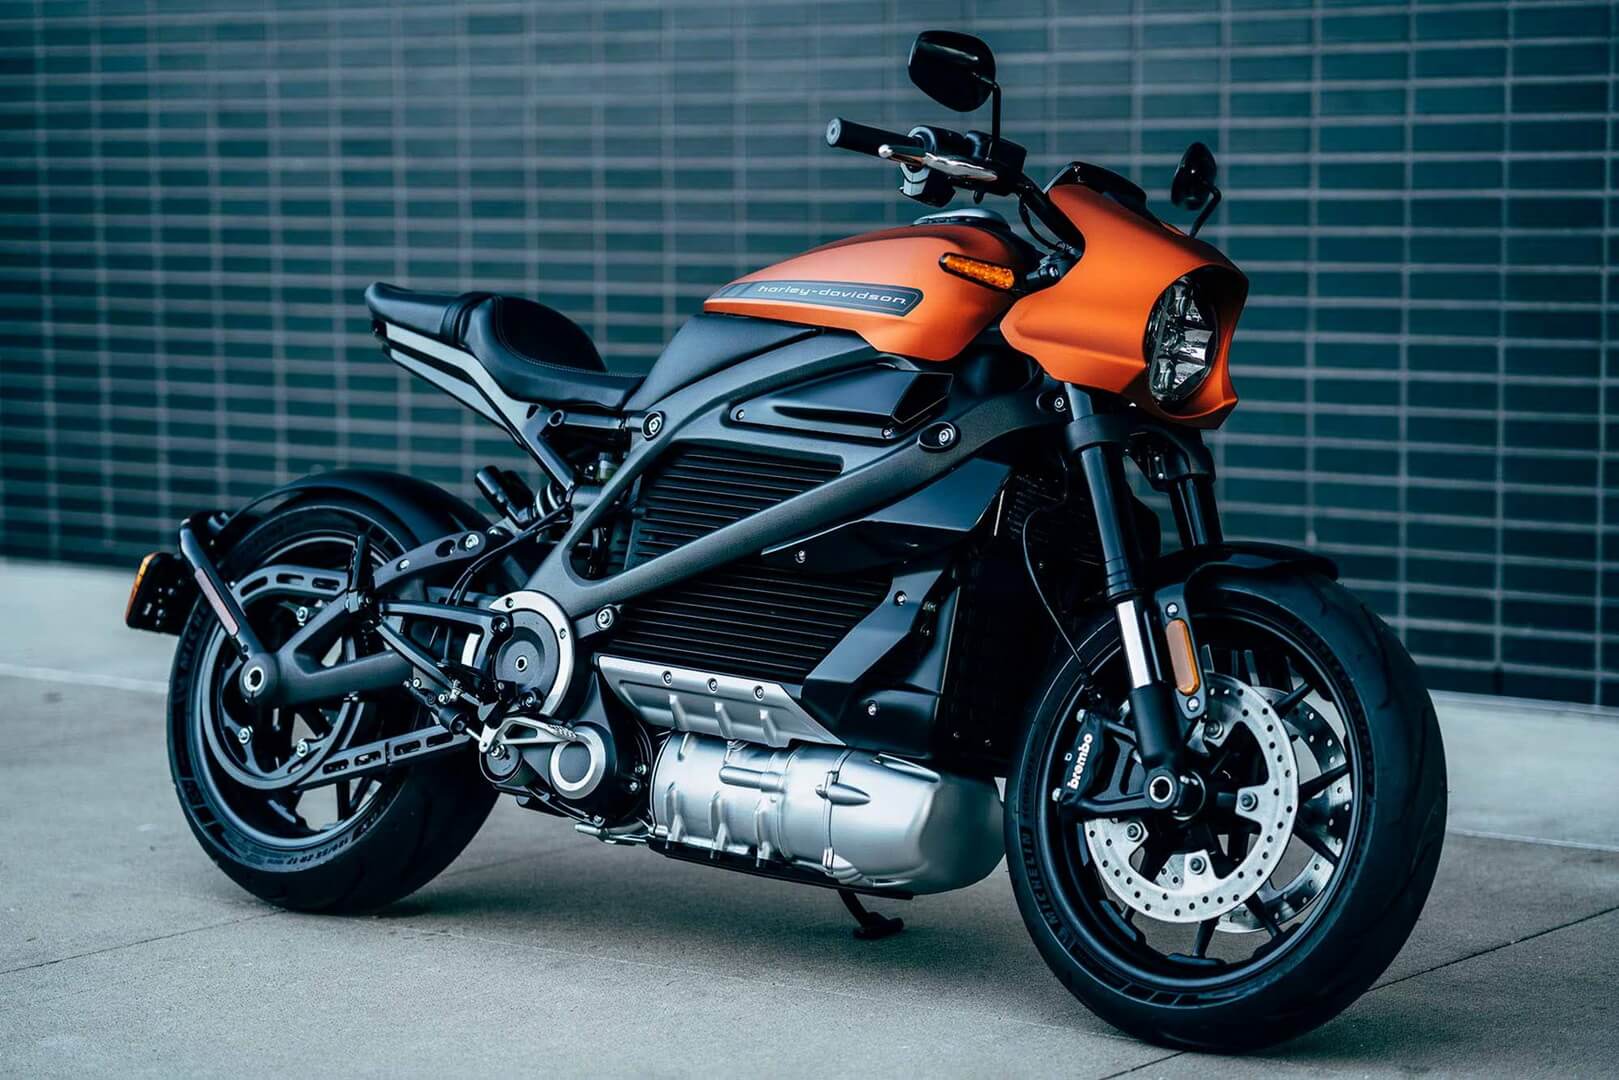 Harley-Davidson LiveWire, marqeya nû ya motorsîkletên elektrîkê dide destpêkirin